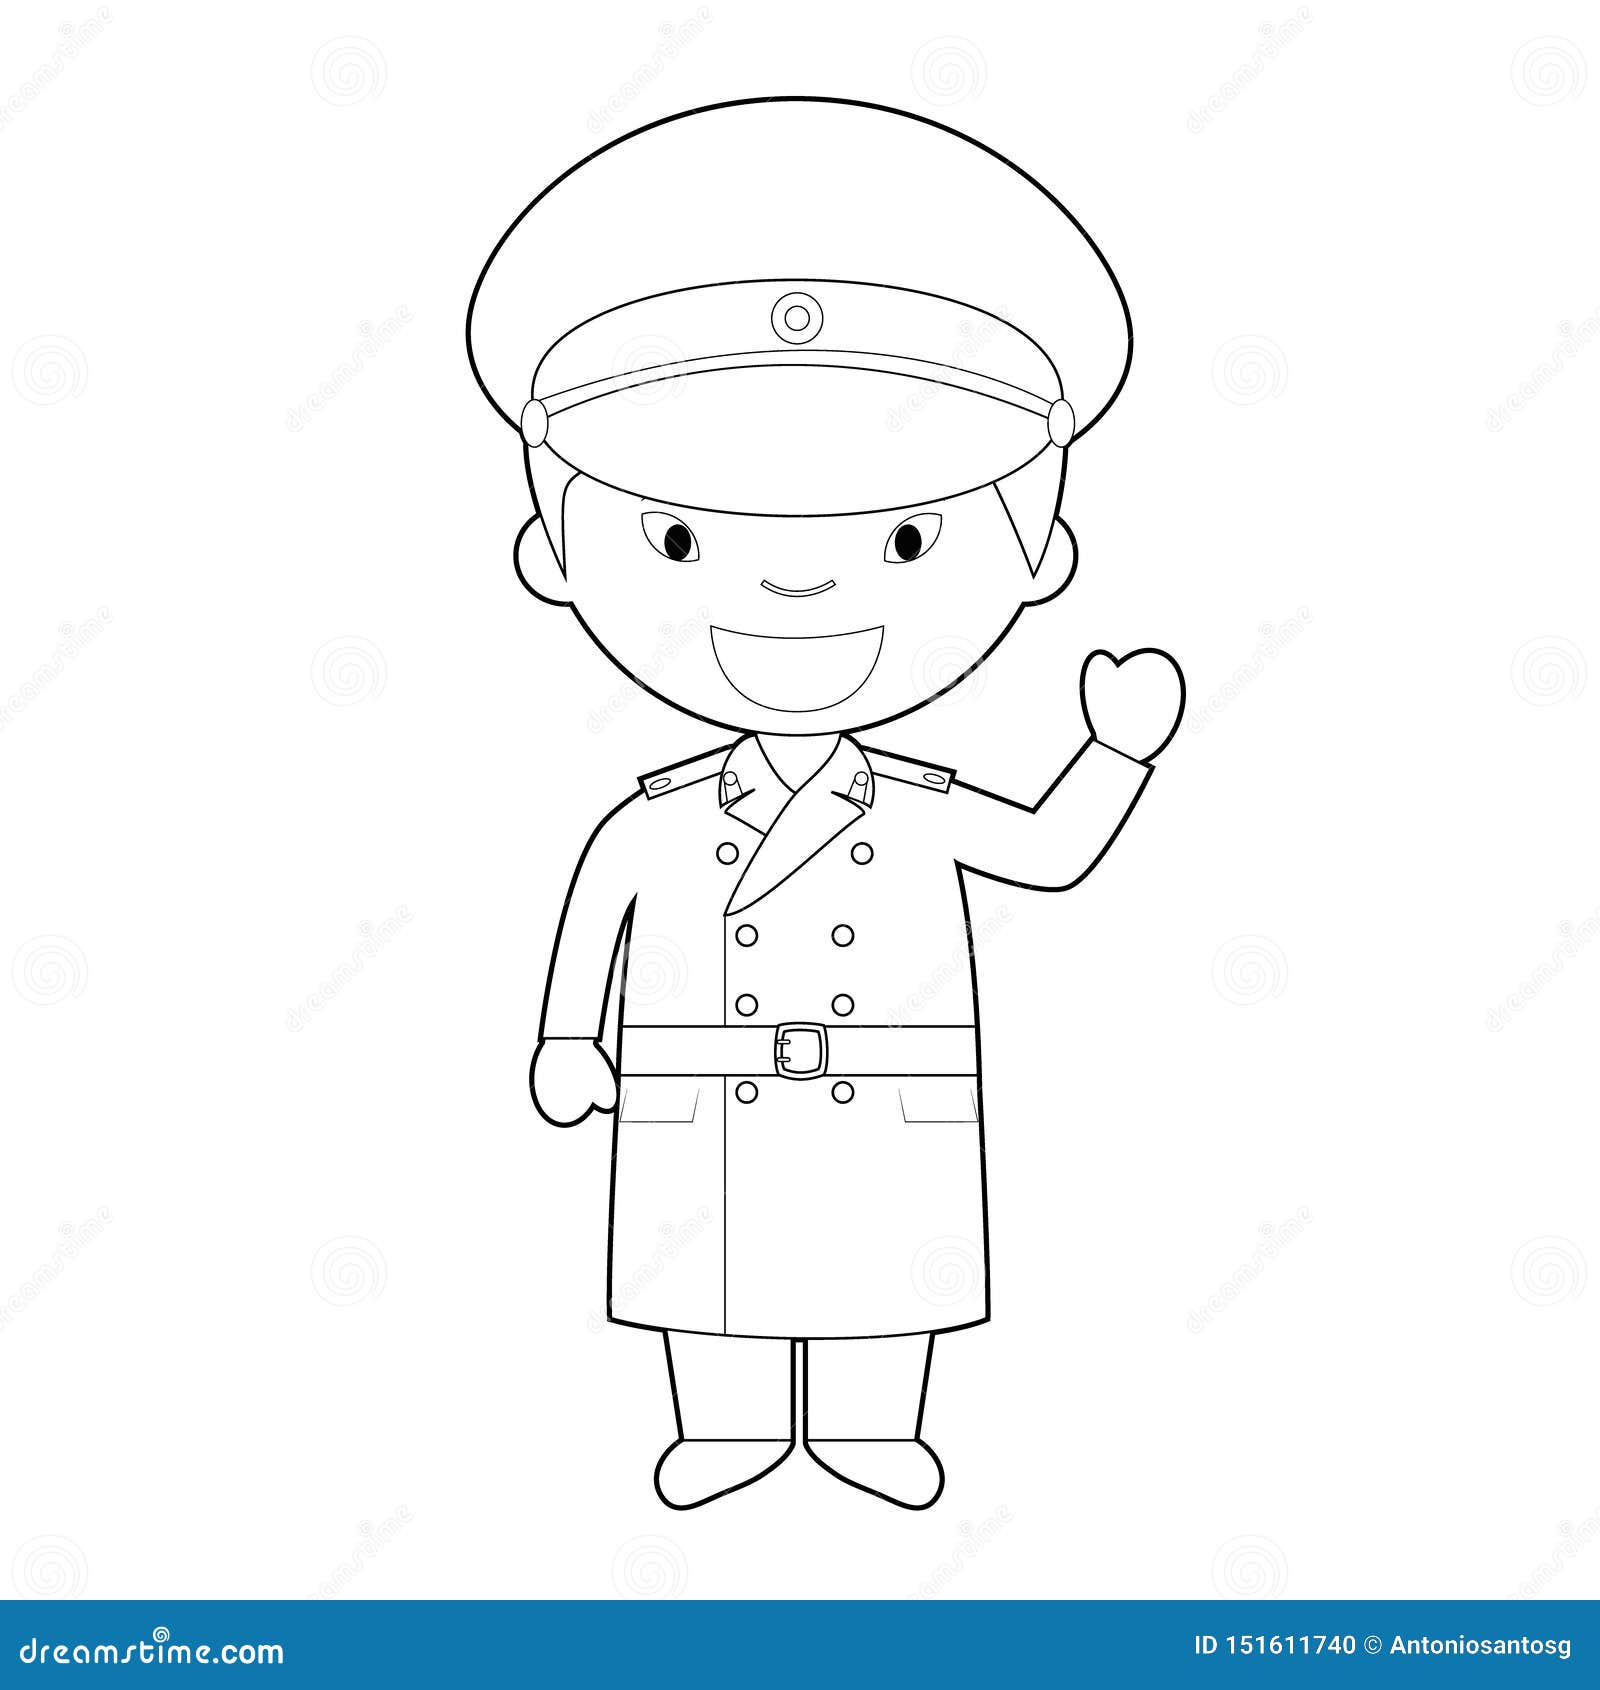 Personaje De Dibujos Animados Que Colorea Facil De Corea Del Norte